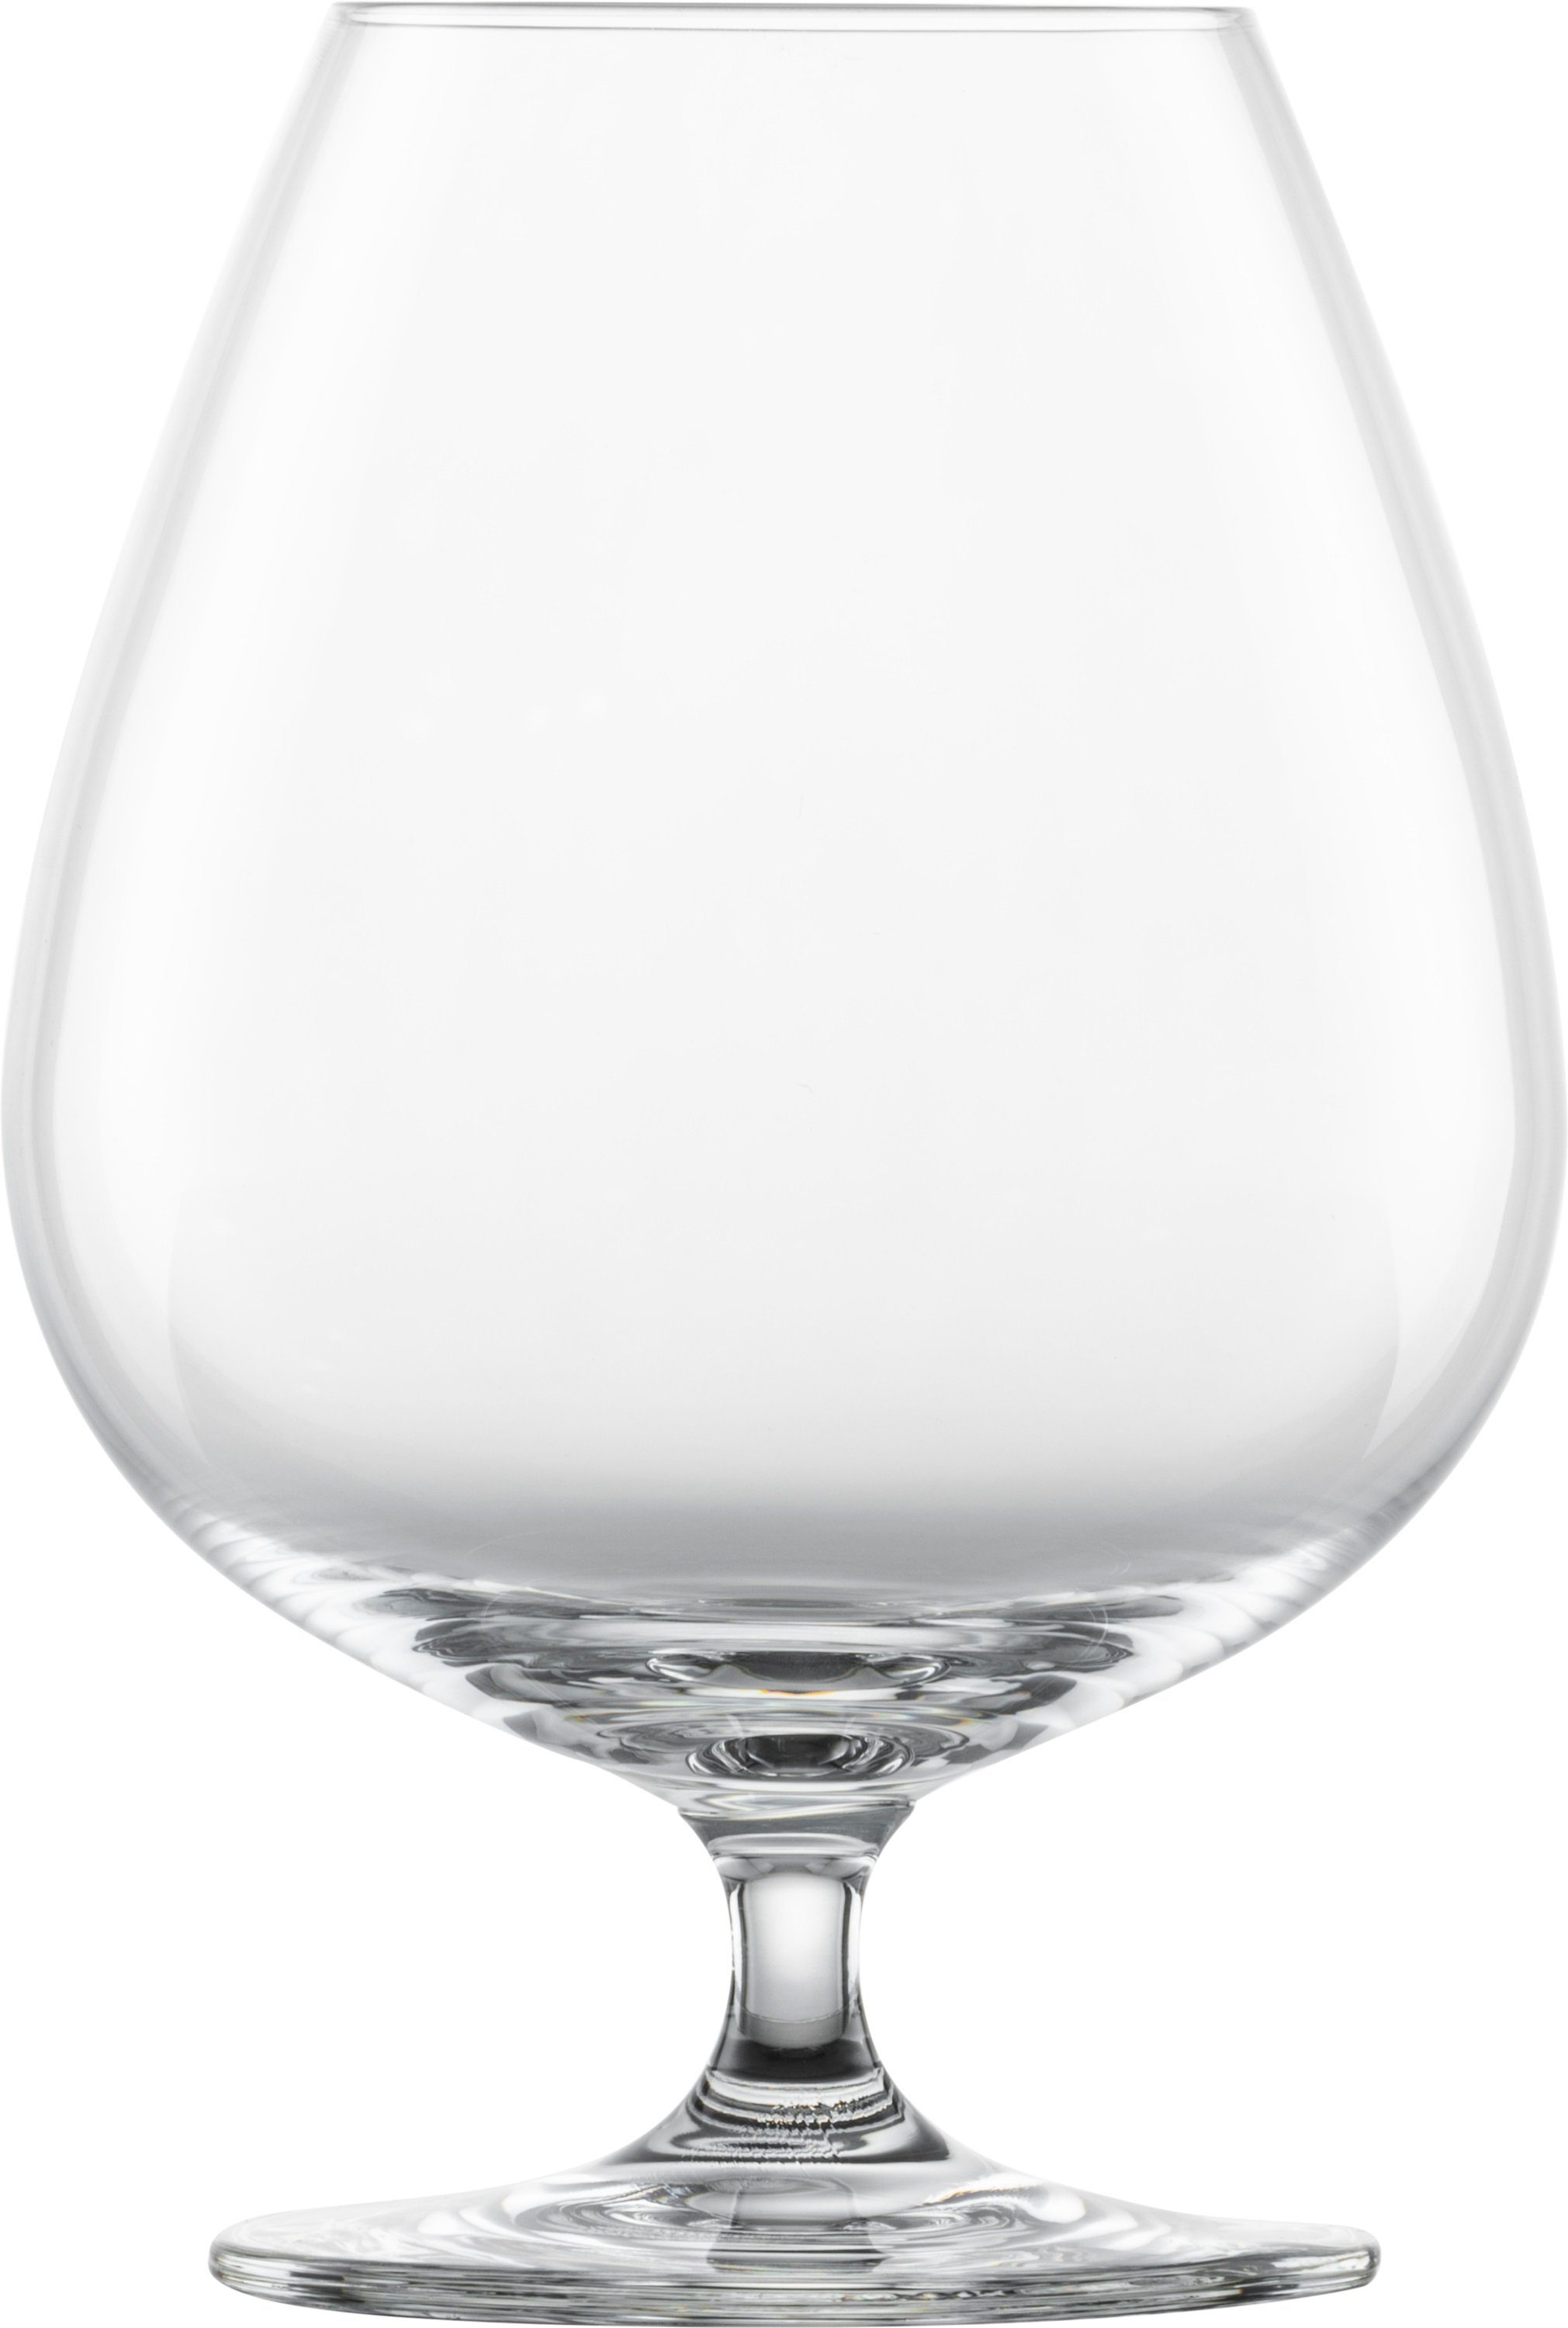 SCHOTT-ZWIESEL Schnapsglas Bar Special Cognac XXL, Glas